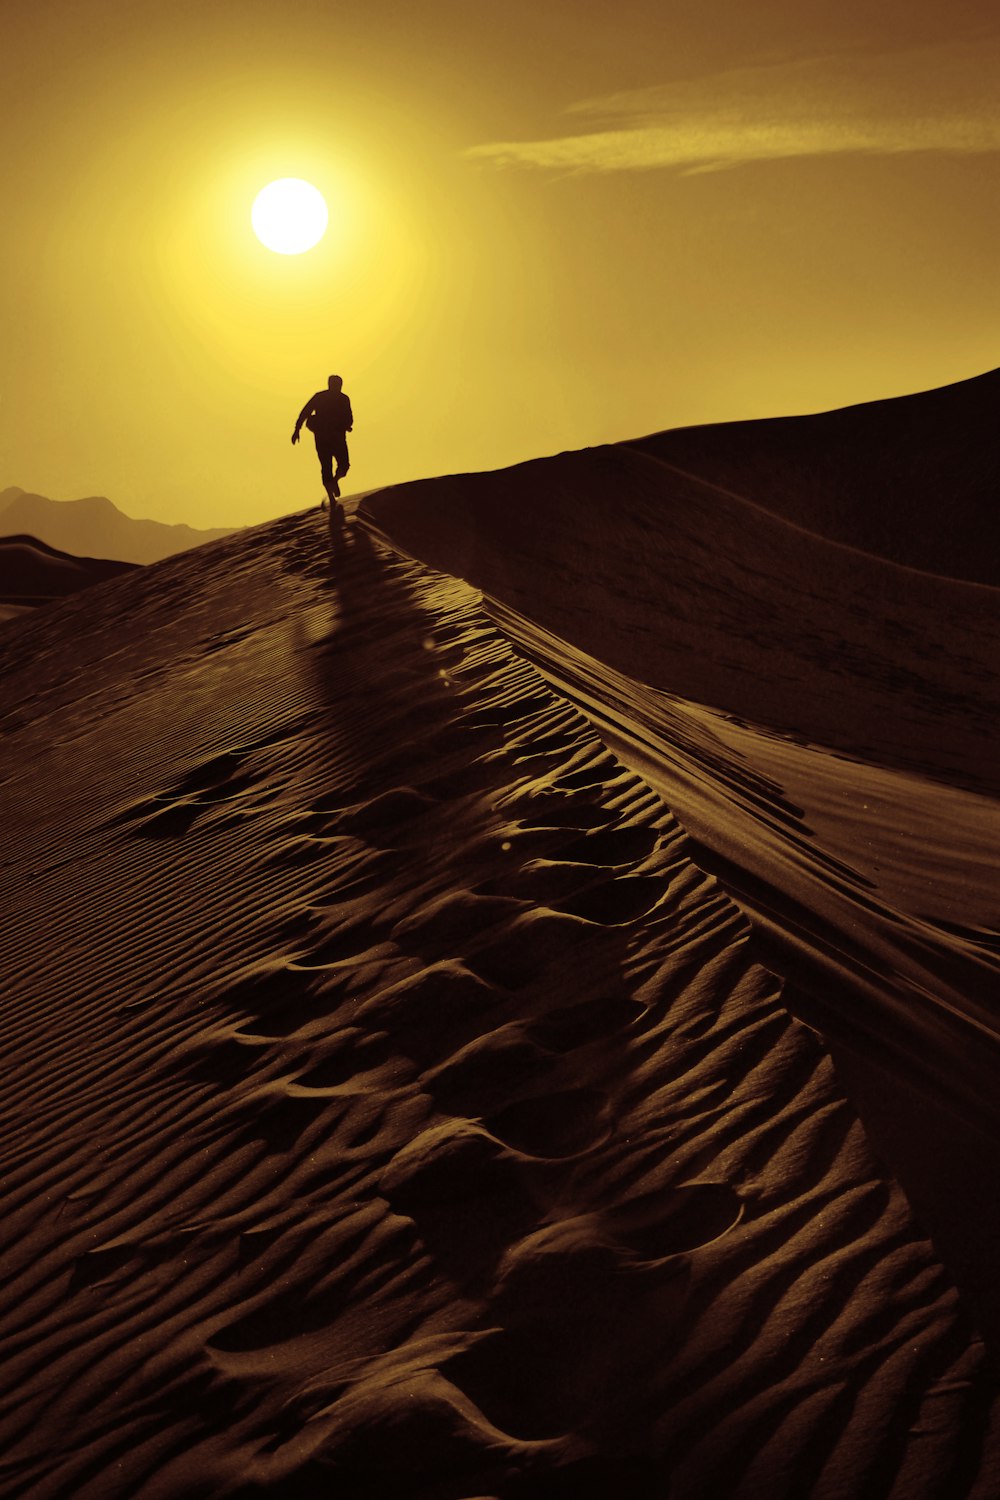 pessoa andando em dunas de areia